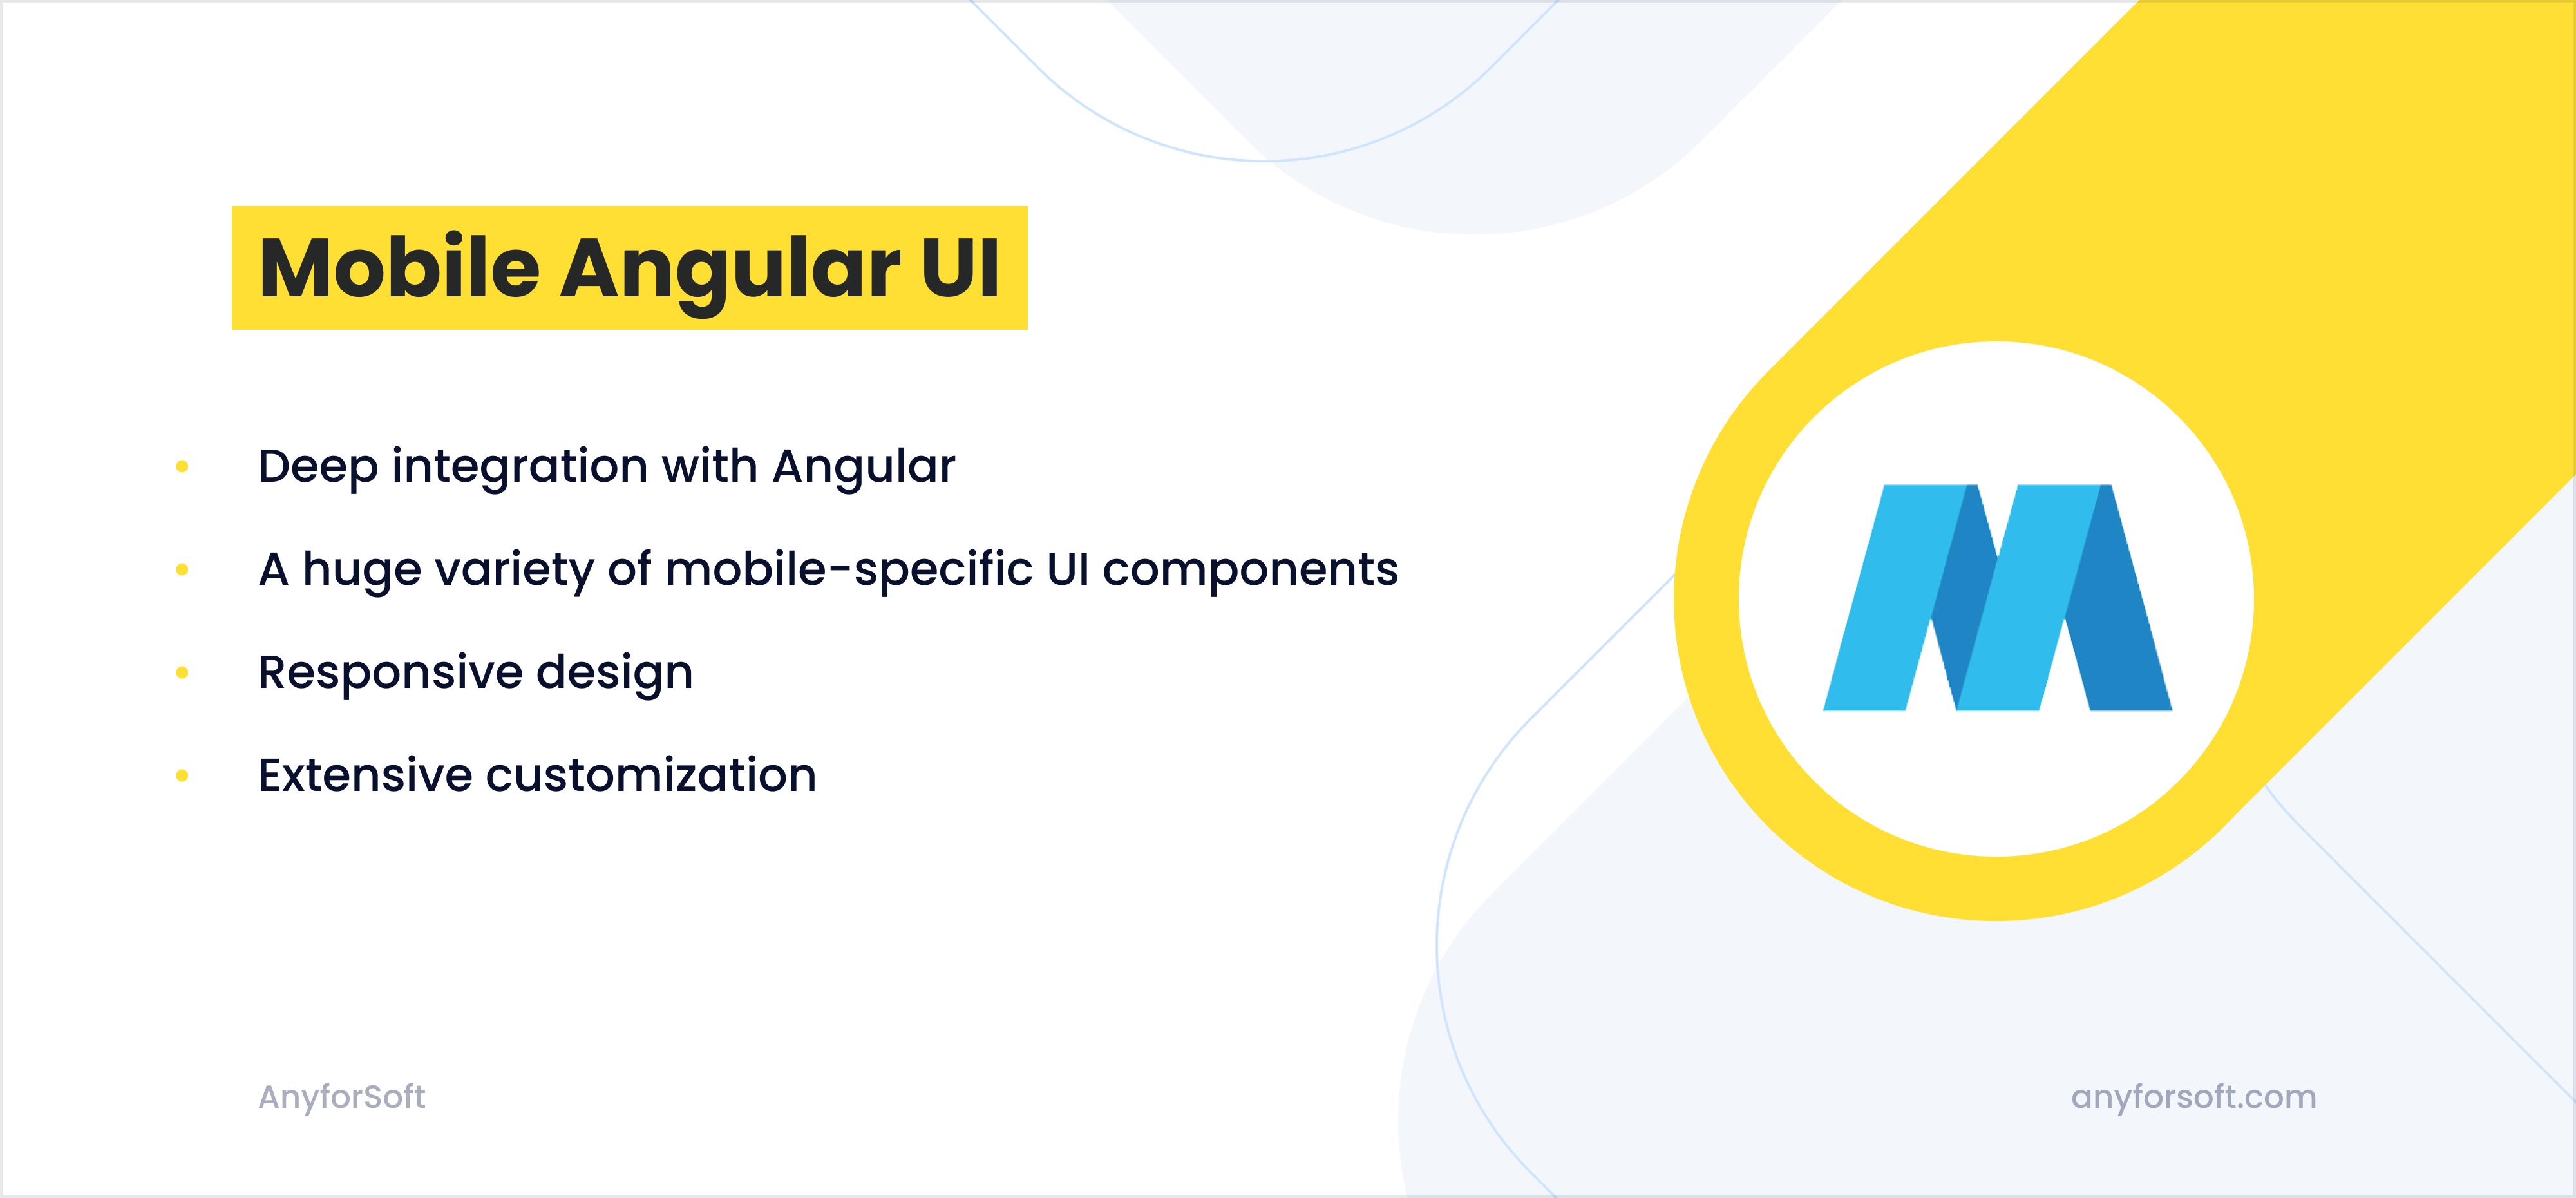 Mobile Angular UI